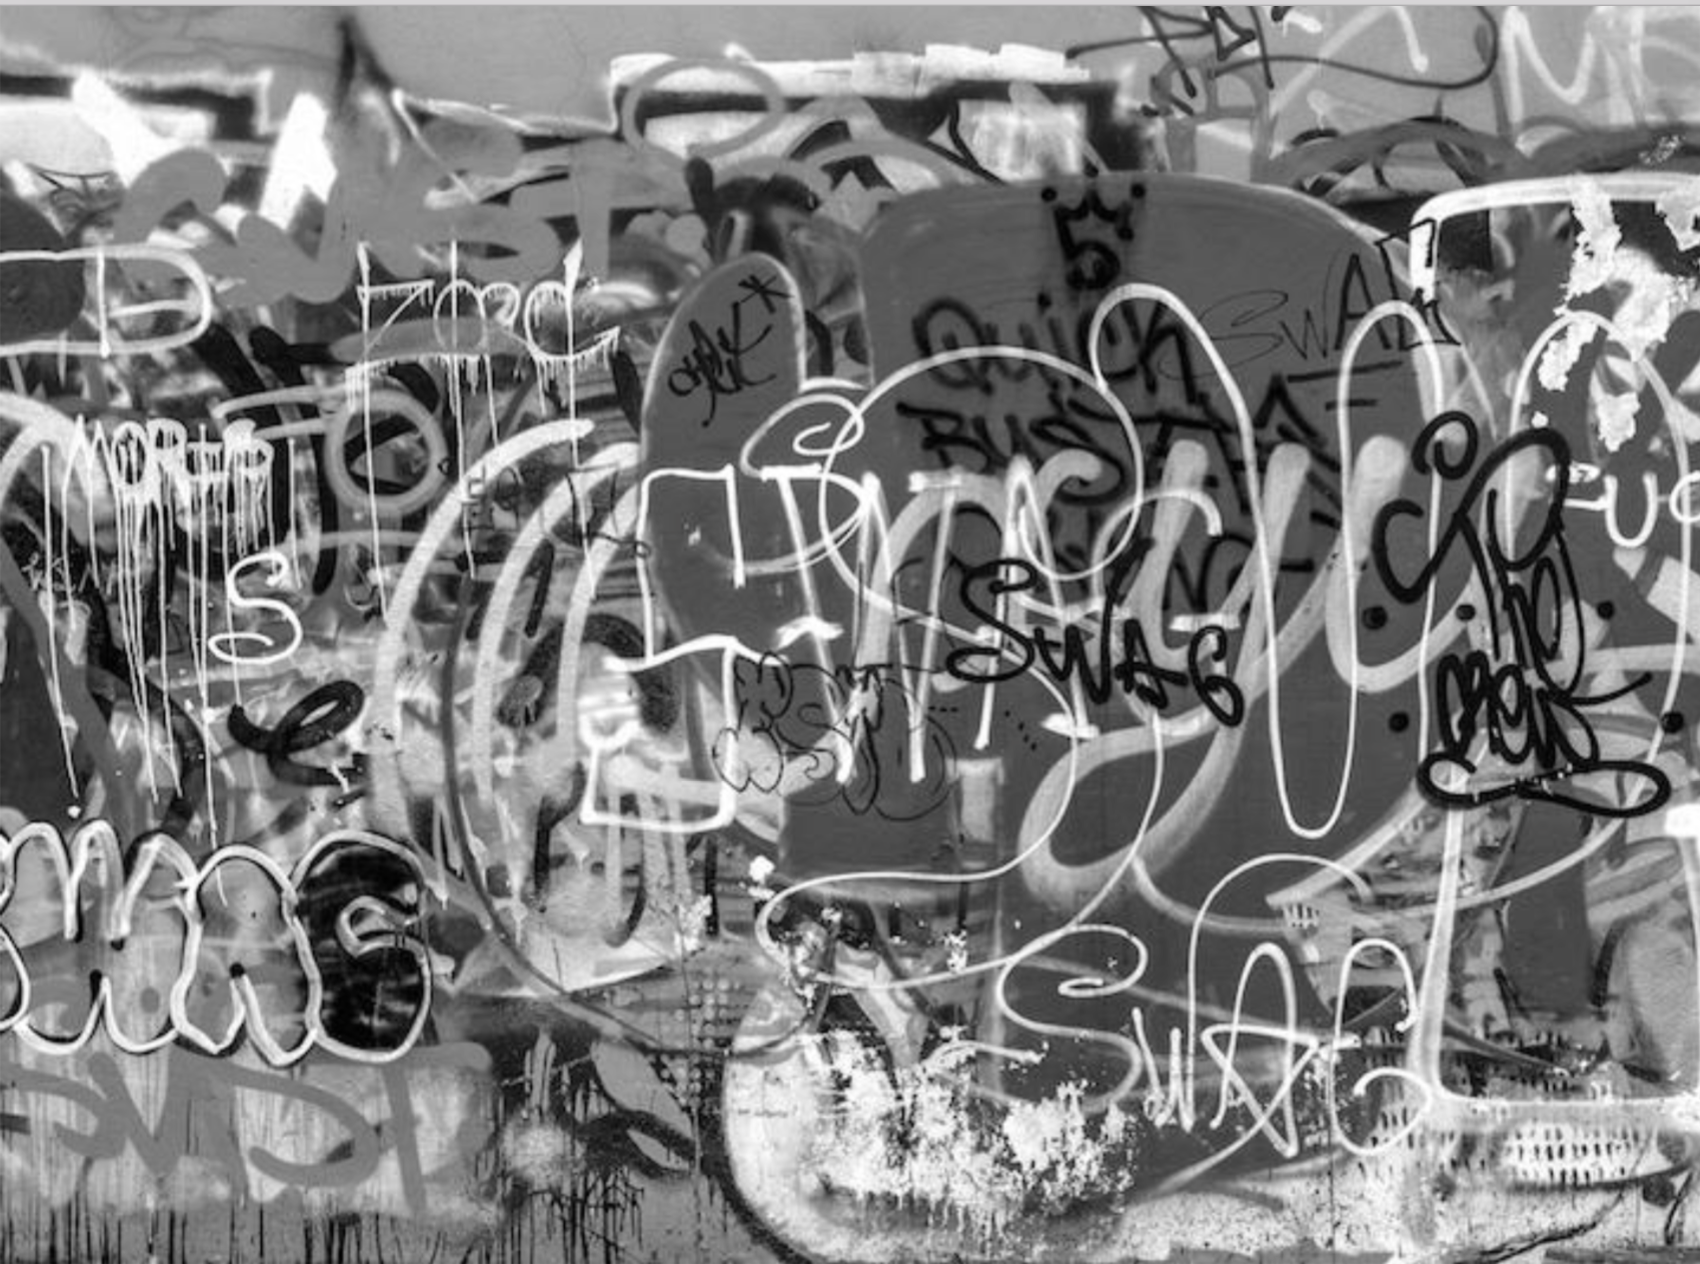 Black and white graffiti wall